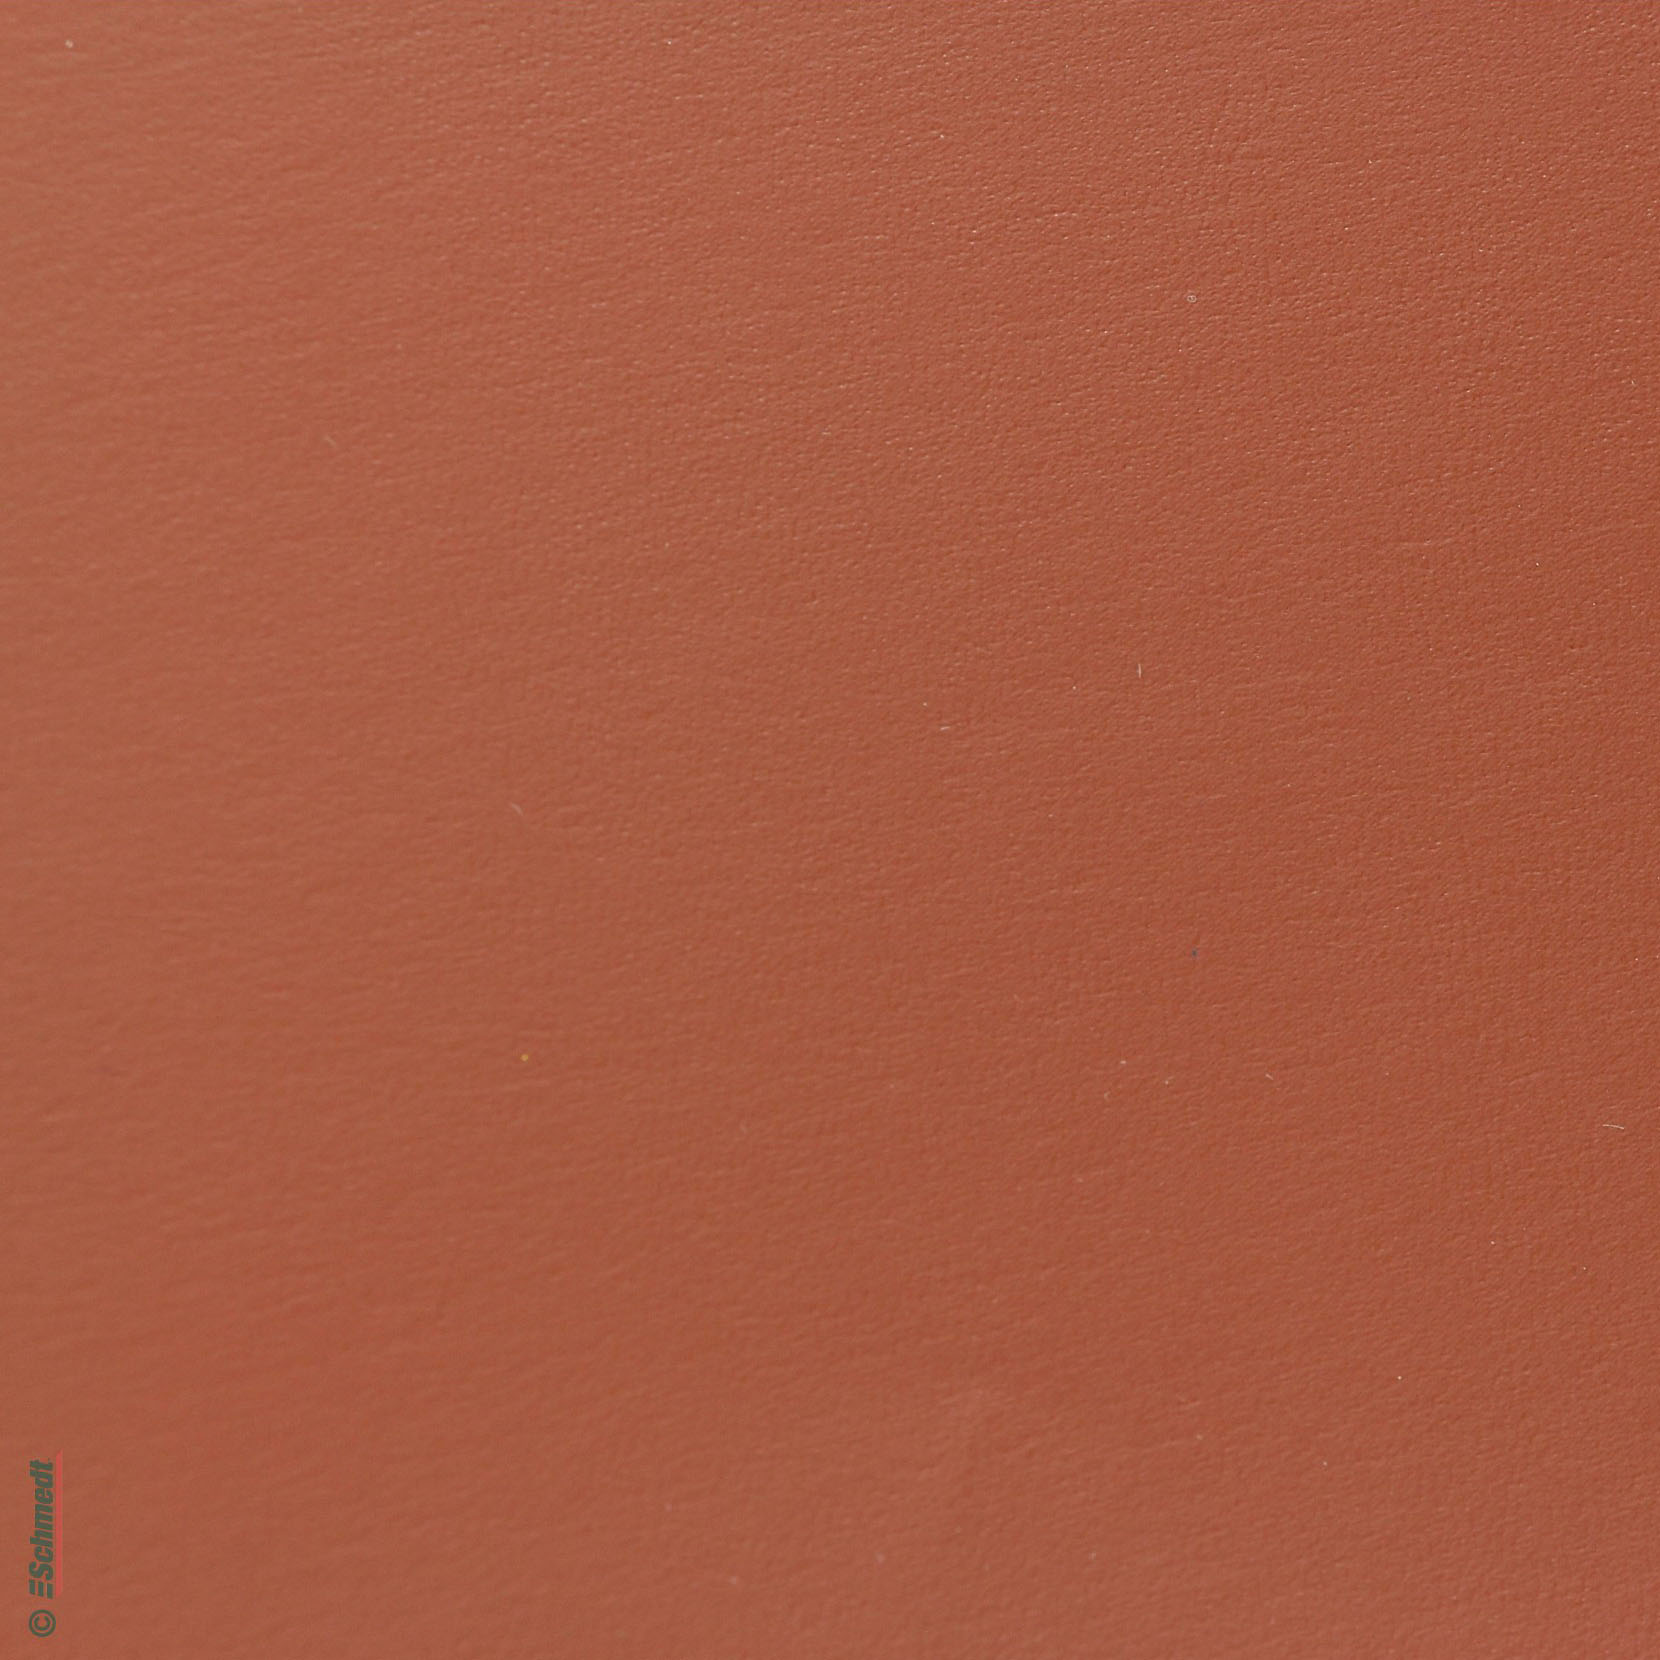 Rainbow LX - Tipo Mattone - Color marrón claro - para encuadernado de tapas de libros, carpetas, archivadores, paquetes y muchos otros usos ...